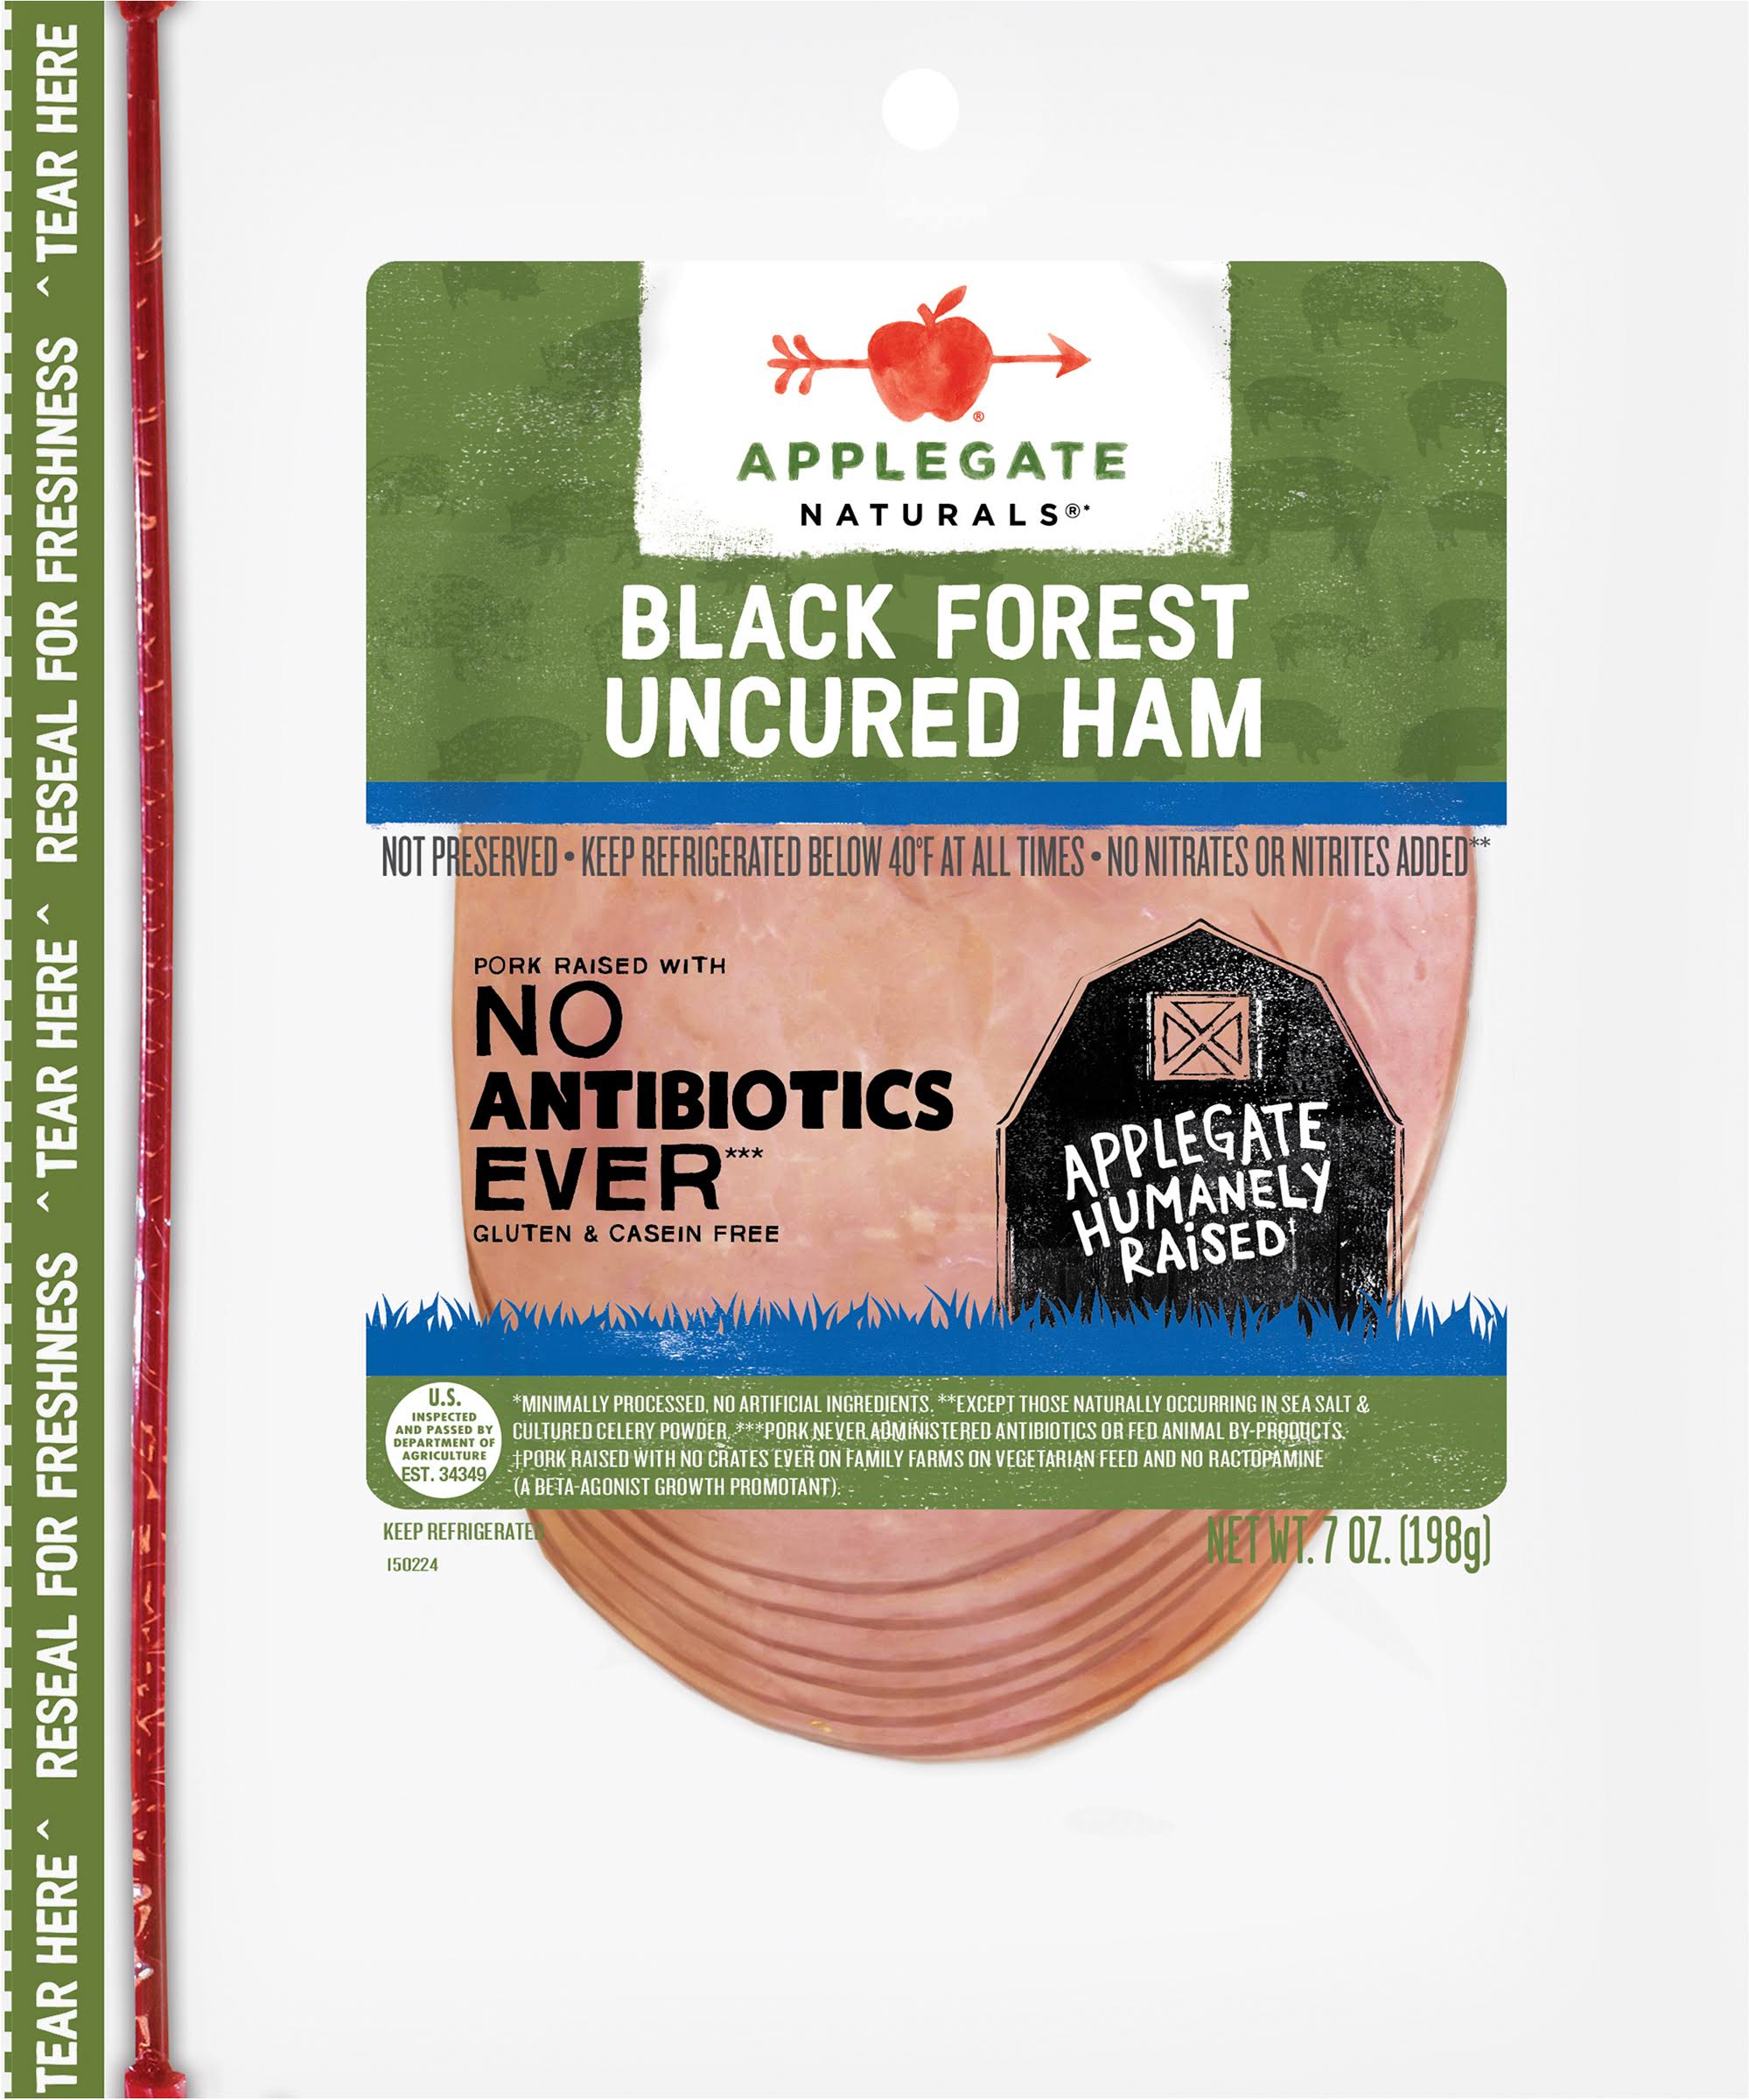 Applegate Naturals Uncured Black Forest Ham - 7oz